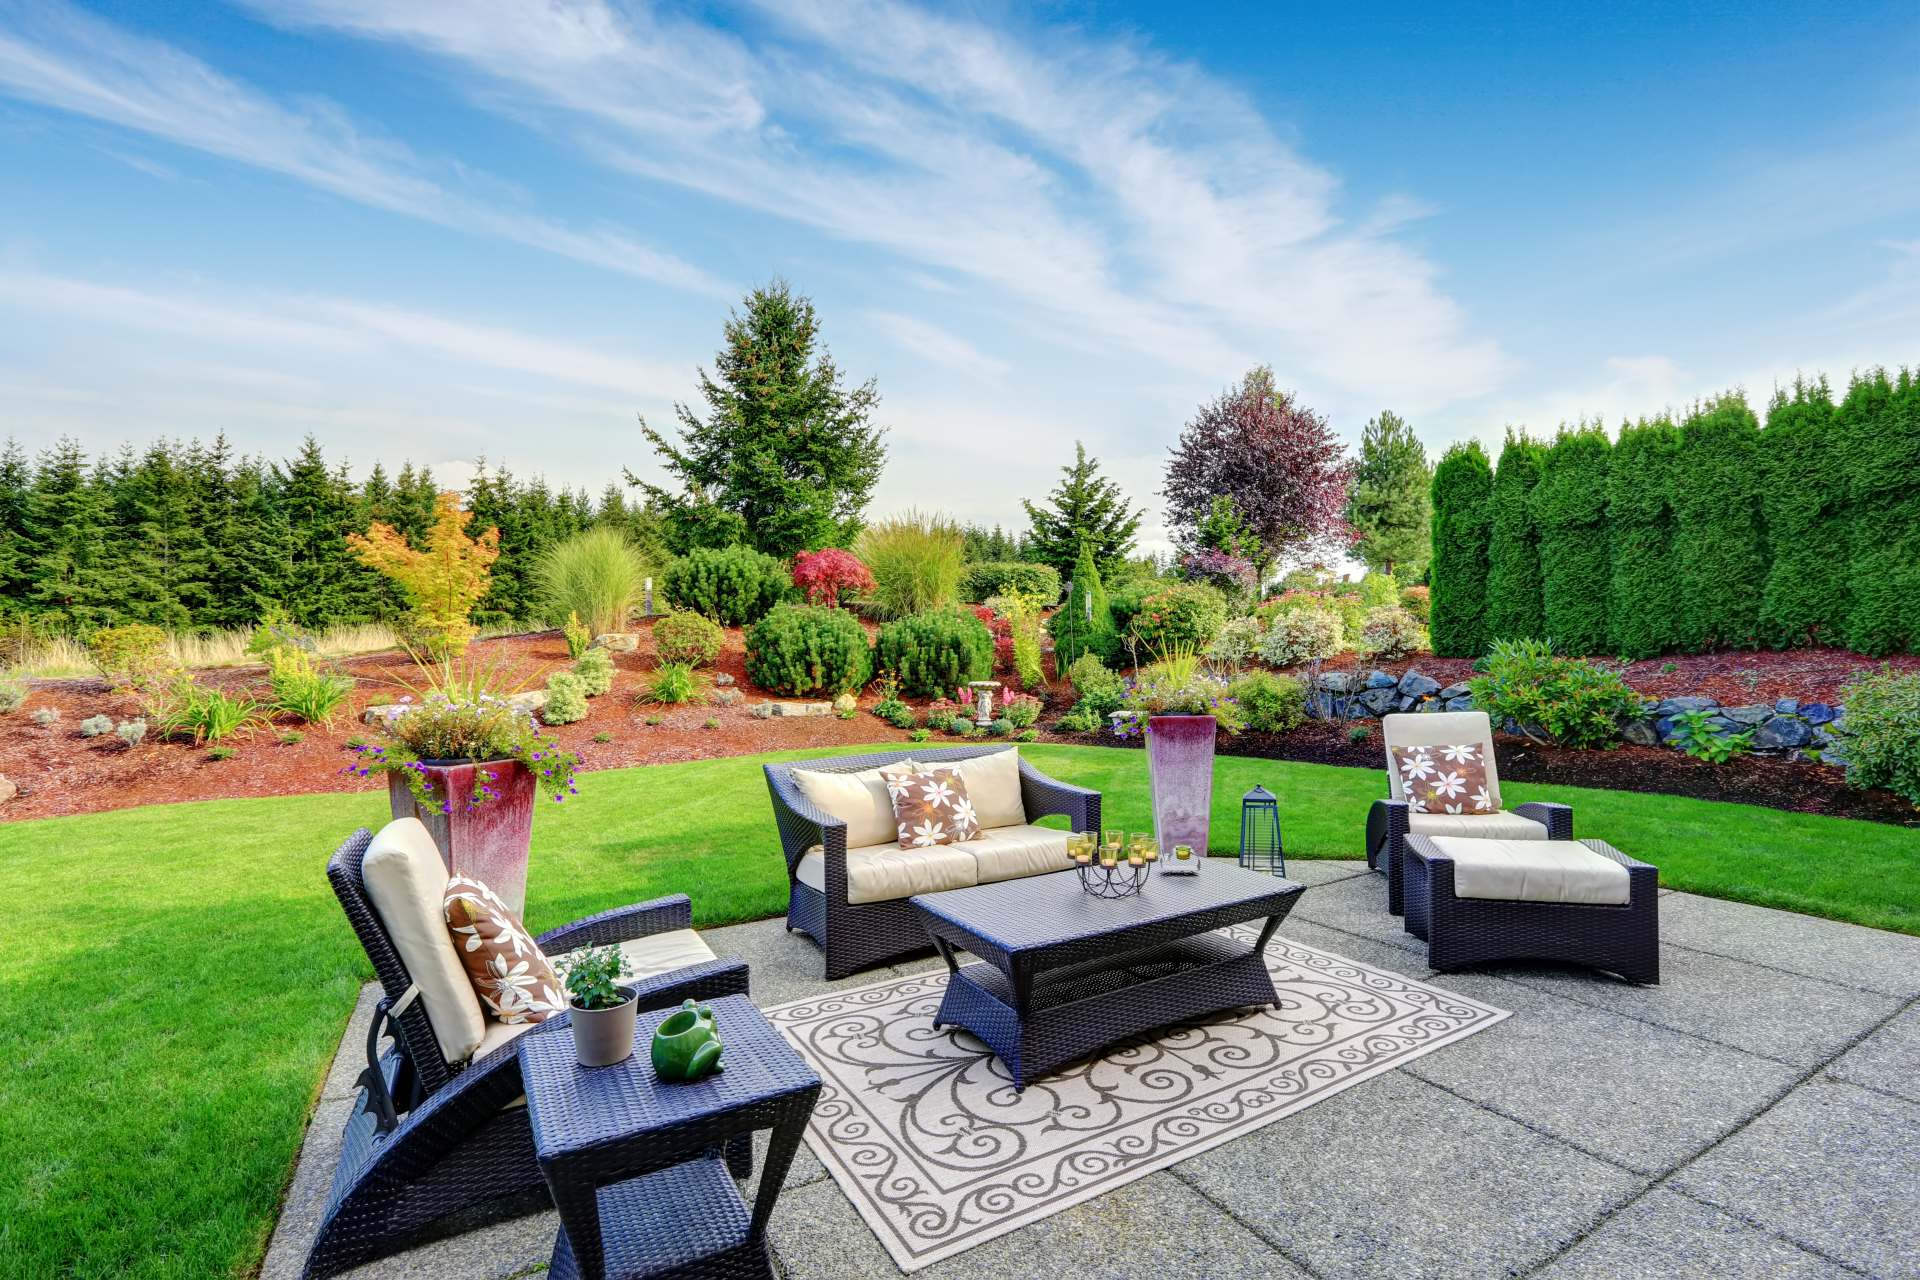 Impressive Backyard Landscape Design with Concrete Patio